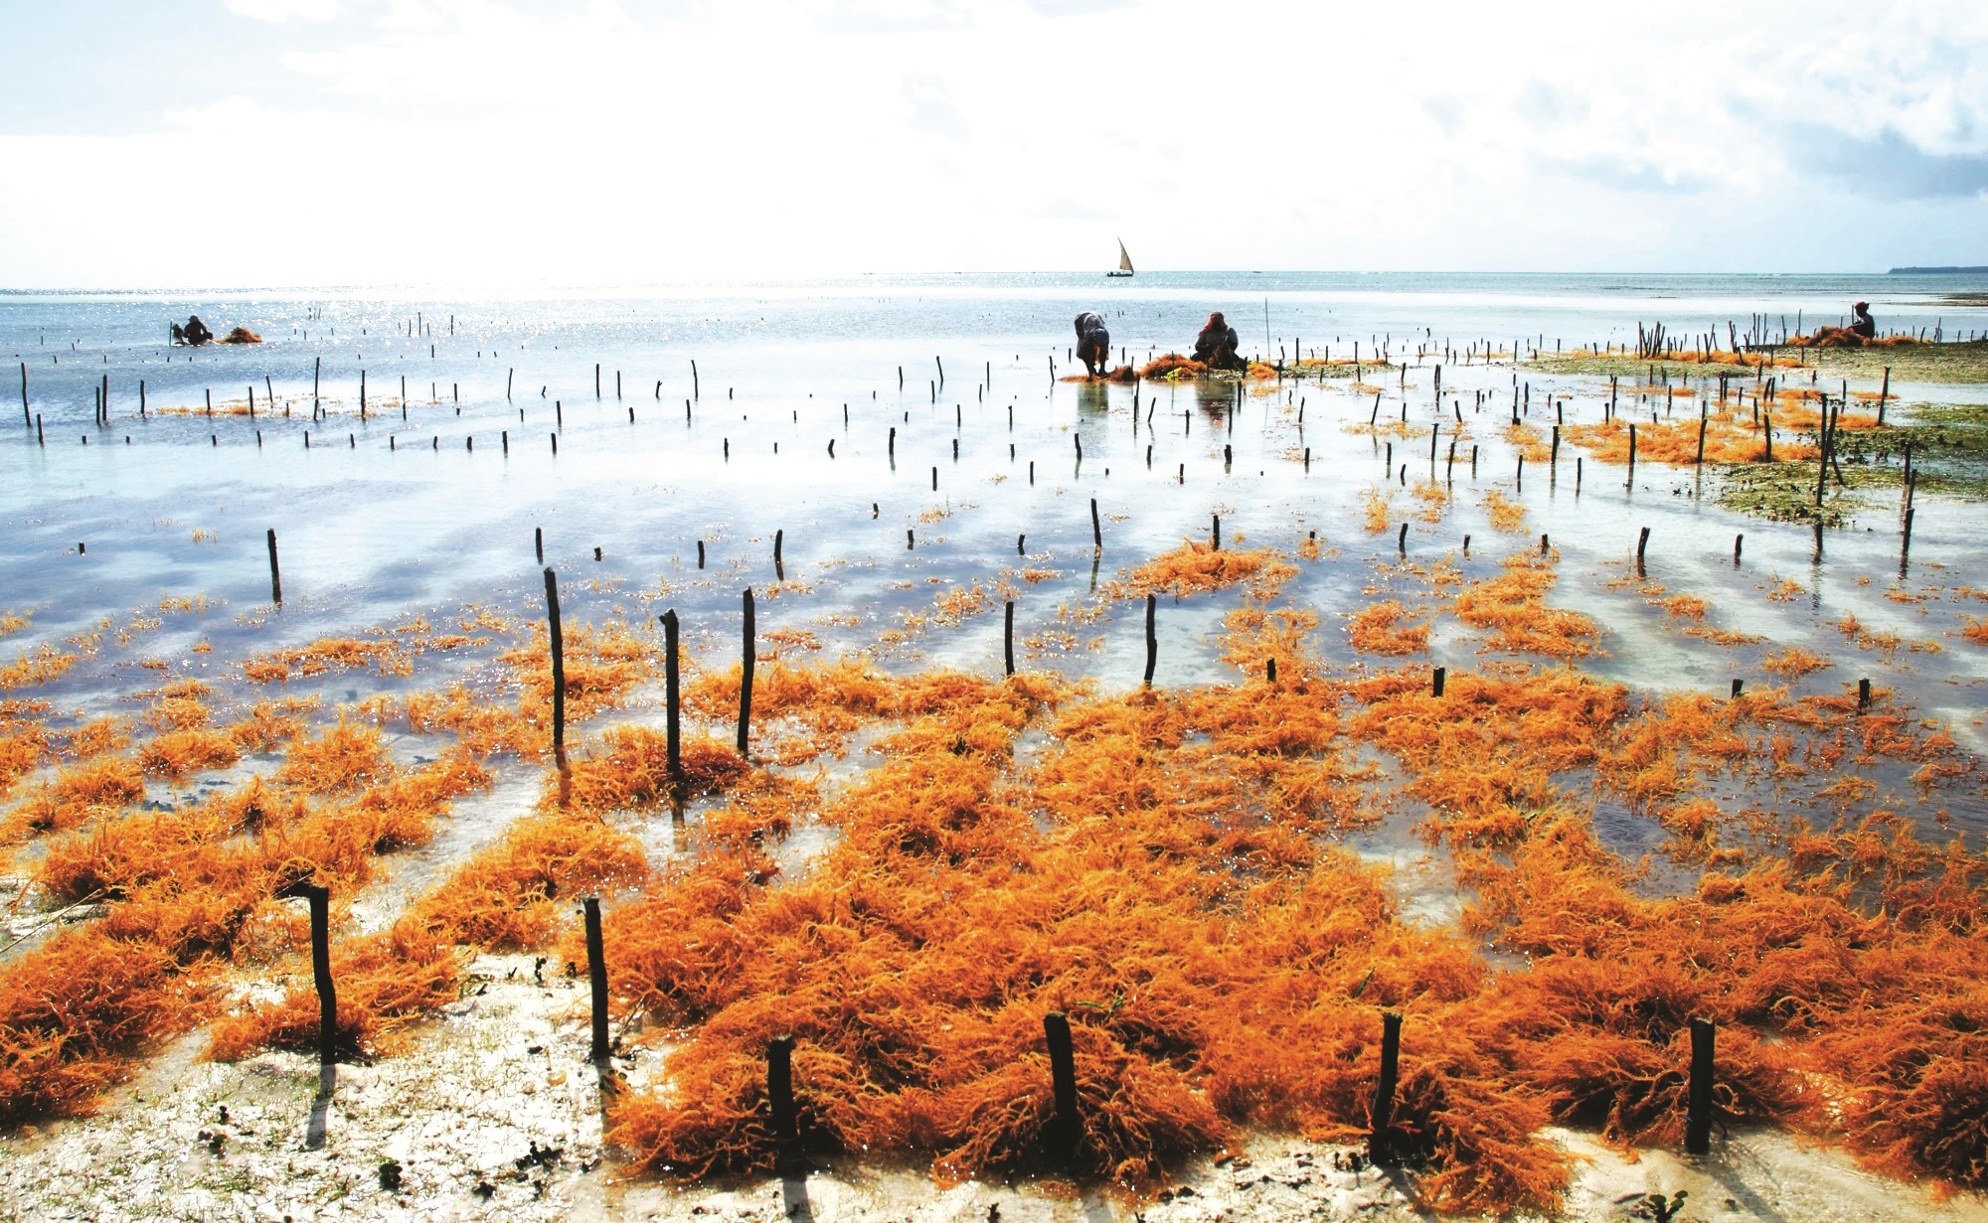 传统技艺配合现代创新  商业生产海藻极具前景 - 农牧世界